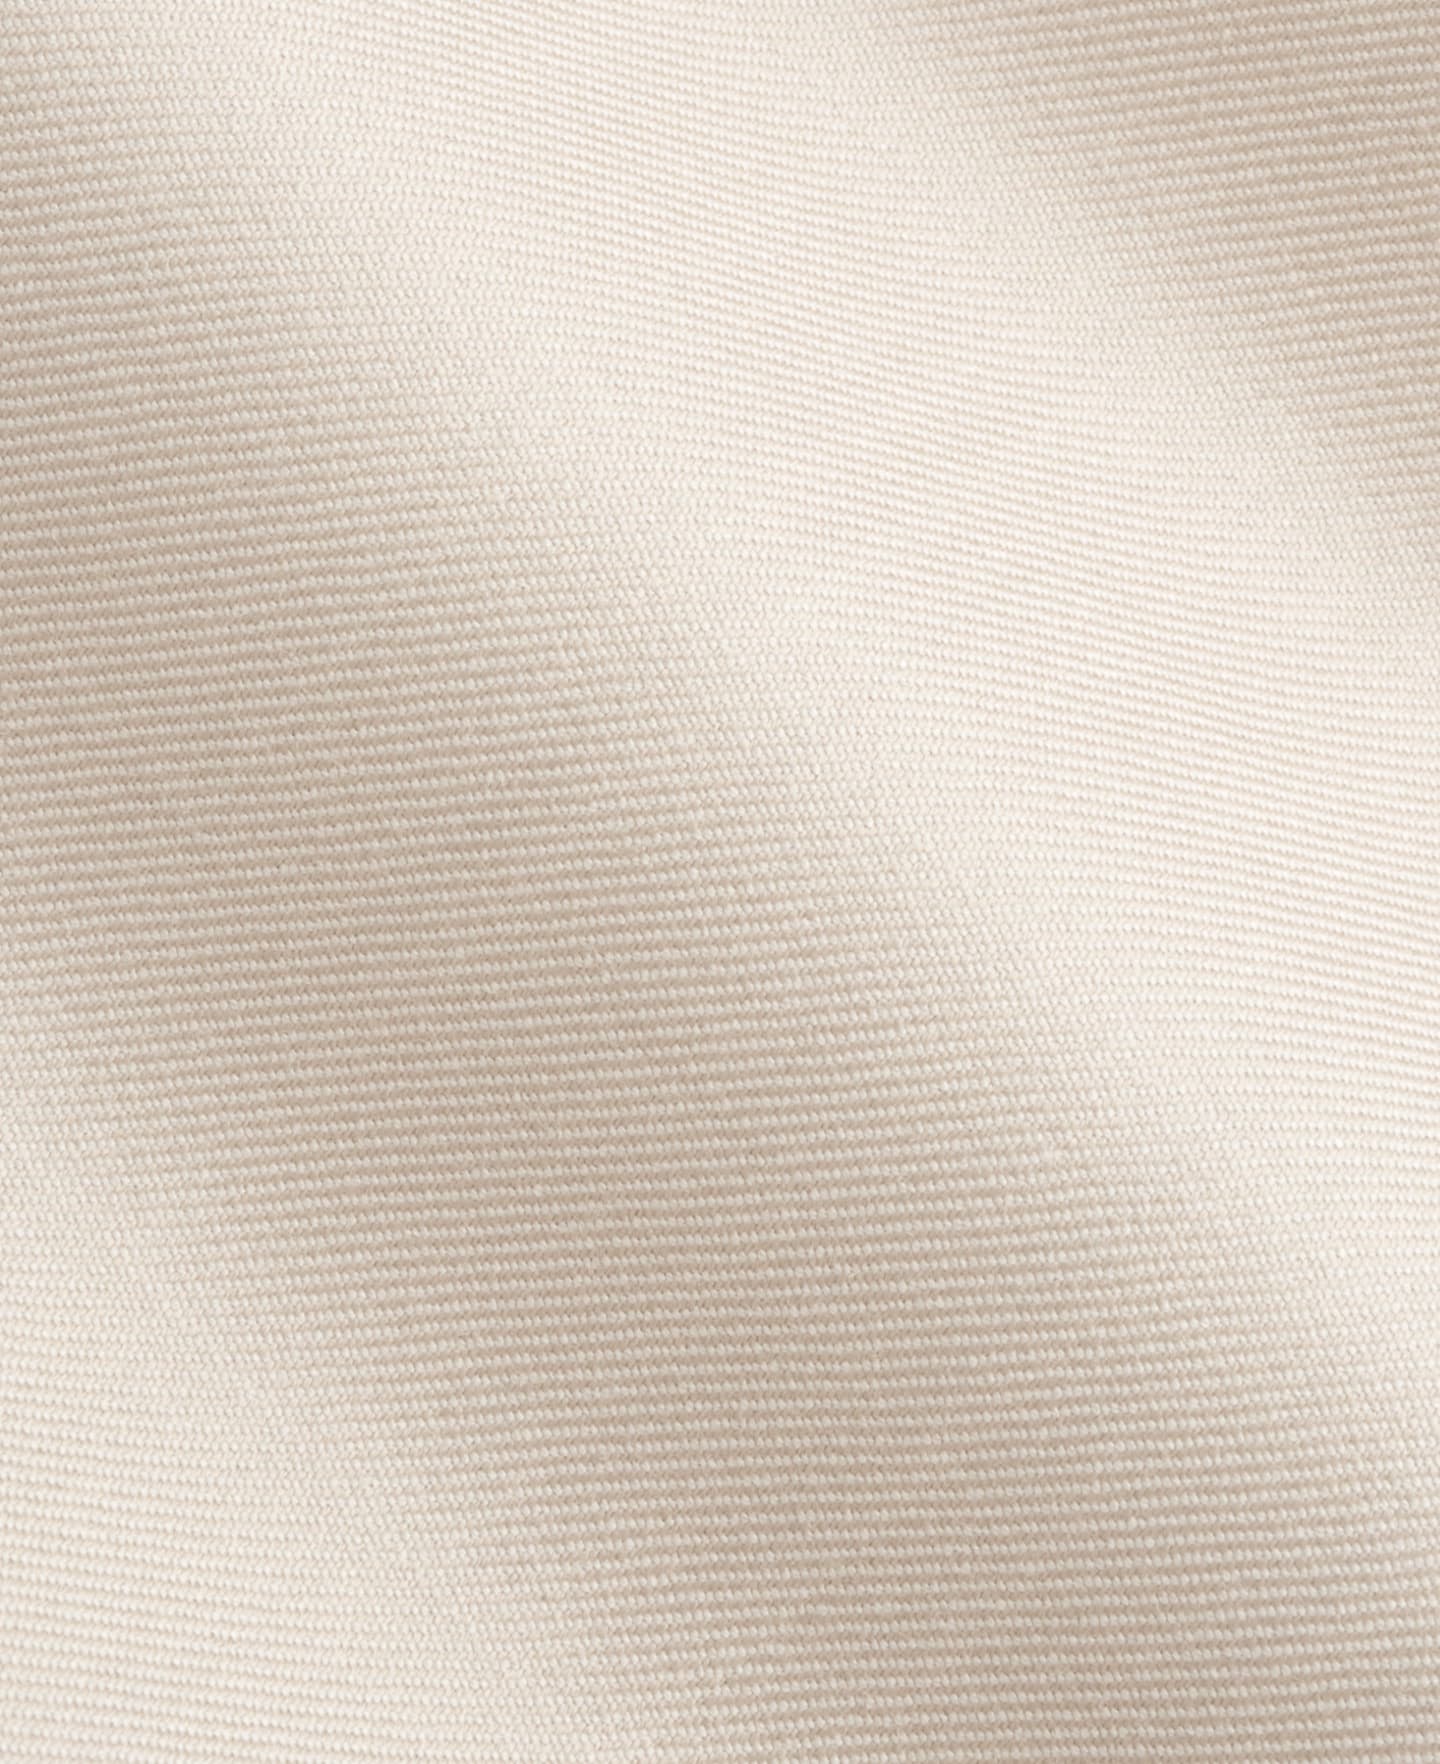 Dettaglio del tessuto in pura lana S180's